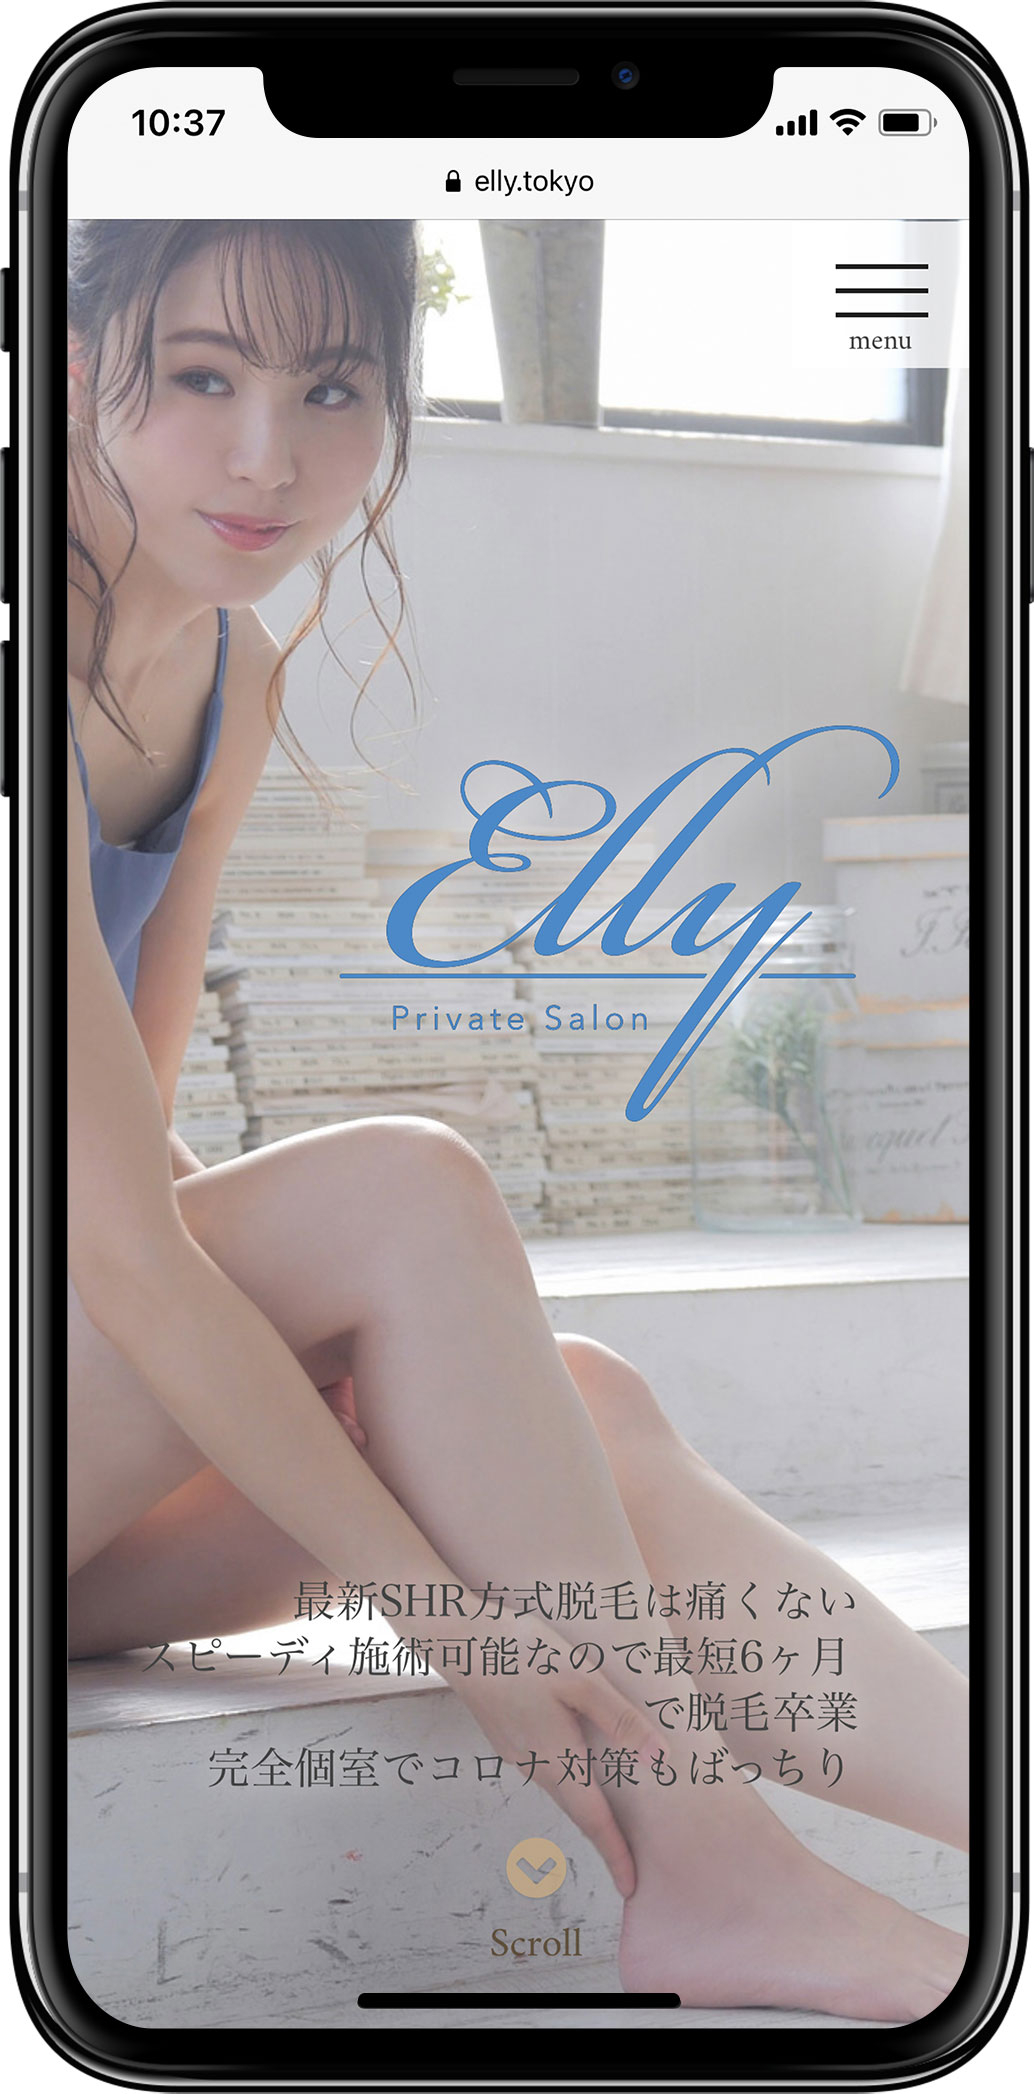 美容サロンElly（エリー）様のホームページを新規作成しましたスマートフォンの見た目